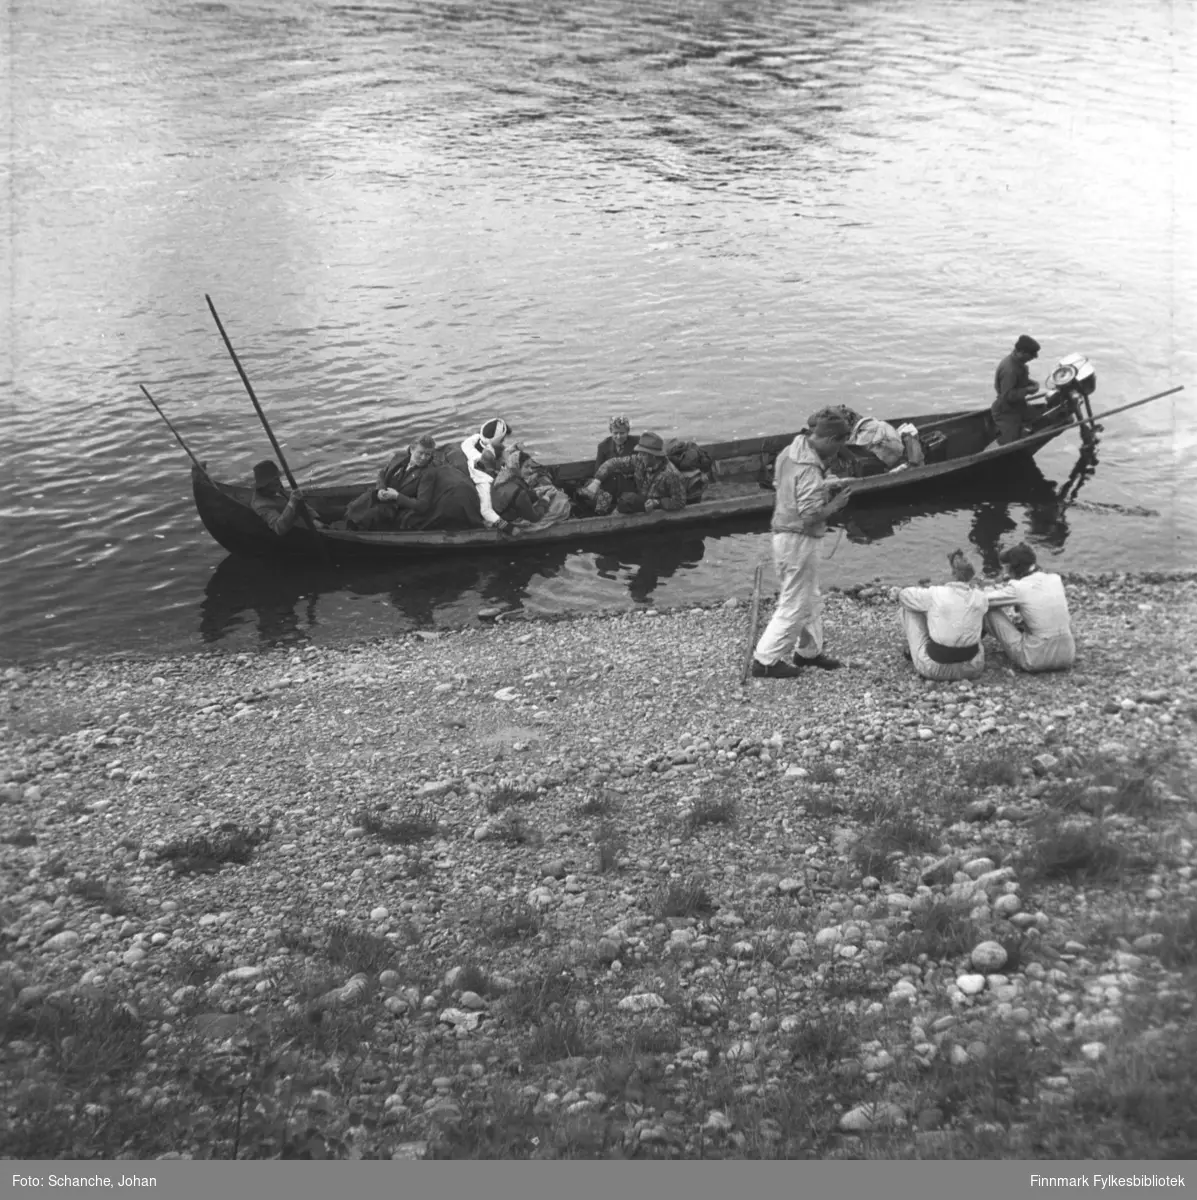 En gruppe mennesker i turklær sitter på elvebåten som er i ferd med og avgå. På båten ryggsekker og bagasje. To menn sitter  og en stårpå elvekanten. Bildet er tatt fra elvebredd ned mot båten.